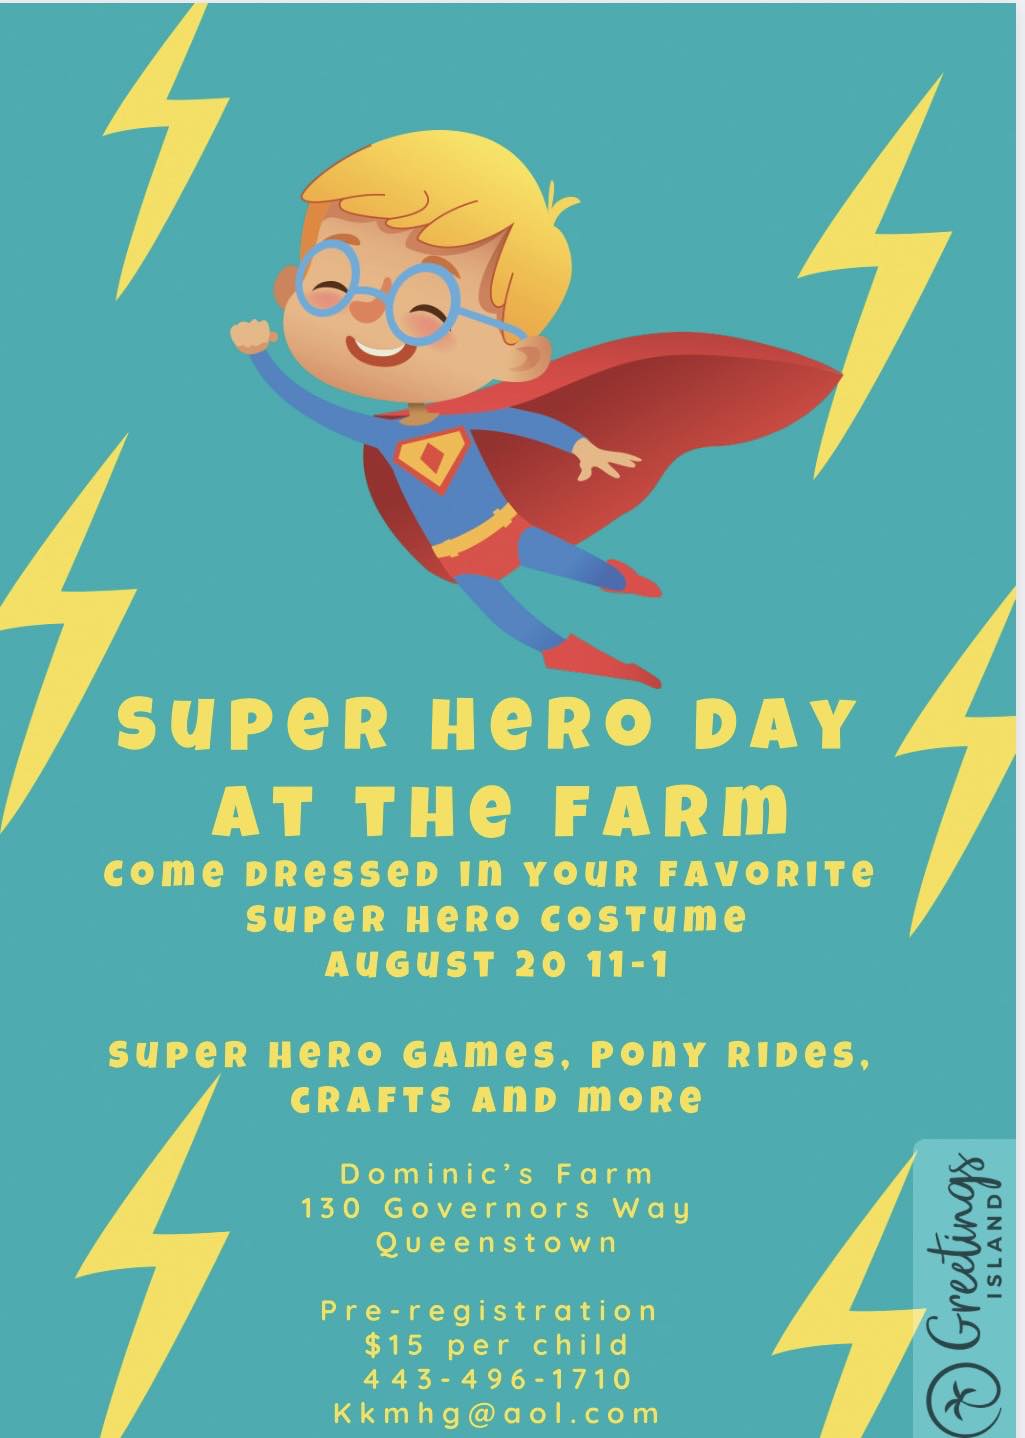 Dominic's Farm - Super Hero Day at the Farm